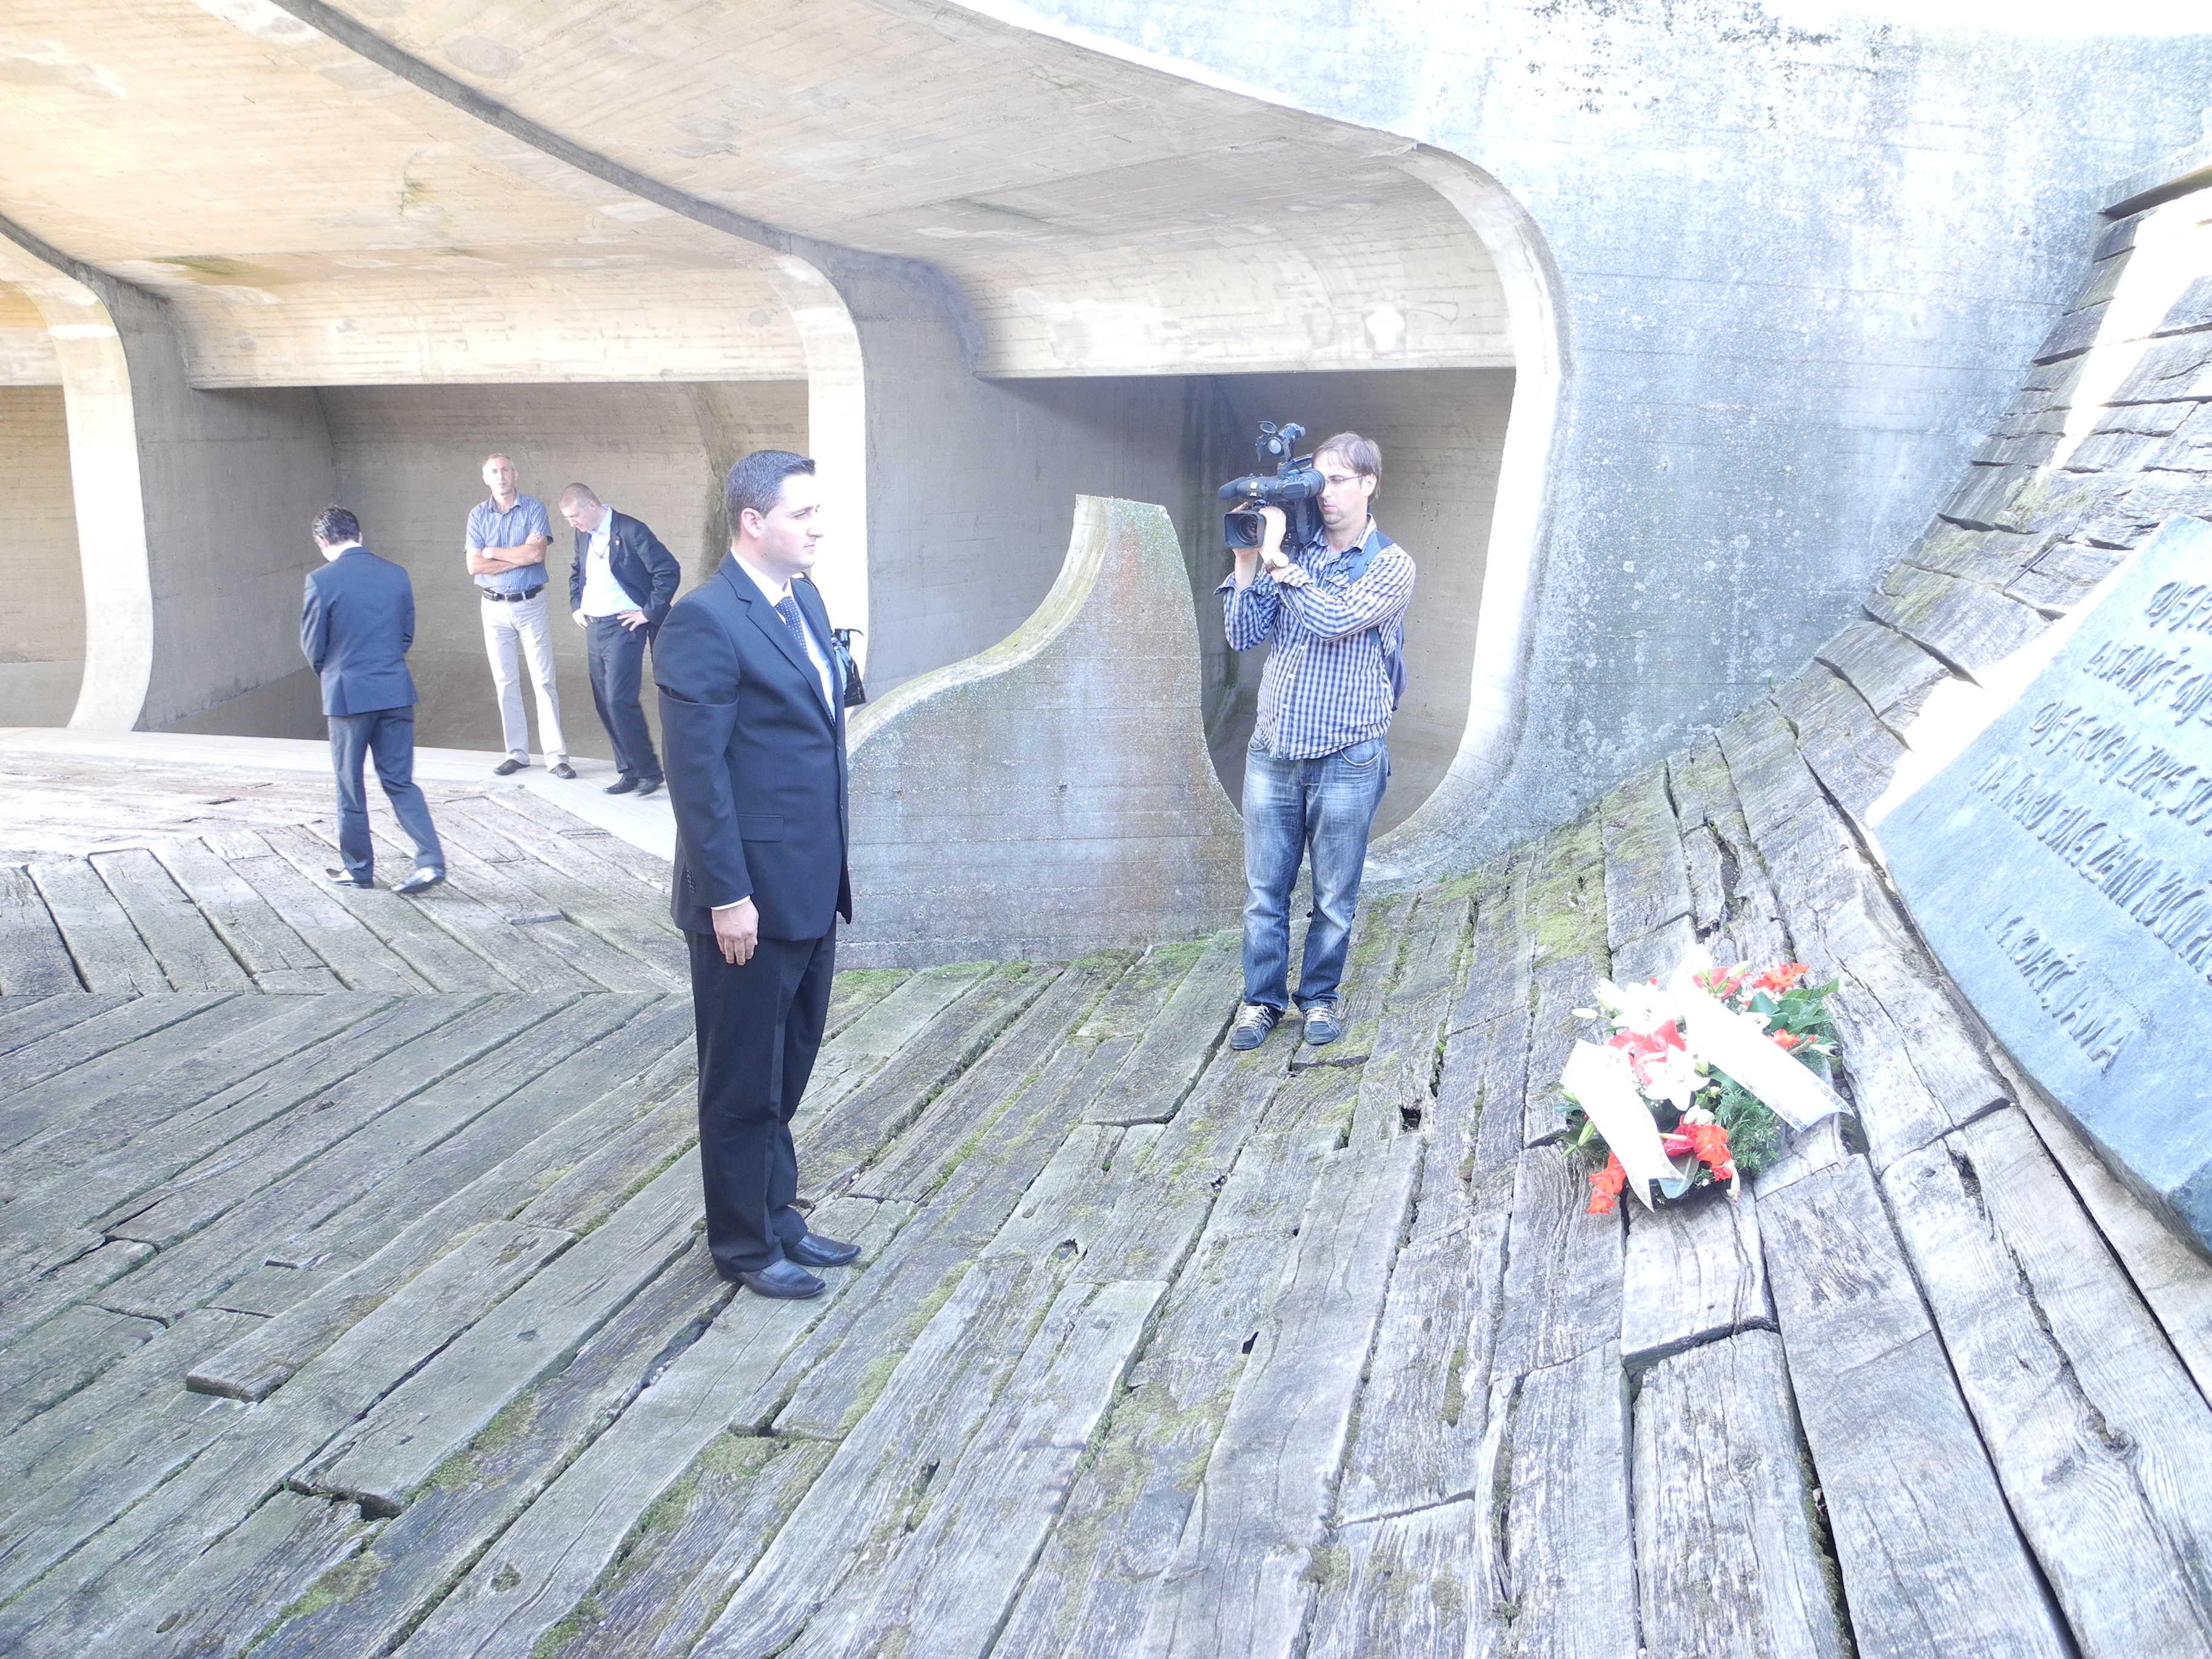 Predsjedavajući Predstavničkog doma dr. Denis Bećirović posjetio spomen područje Jasenovac

